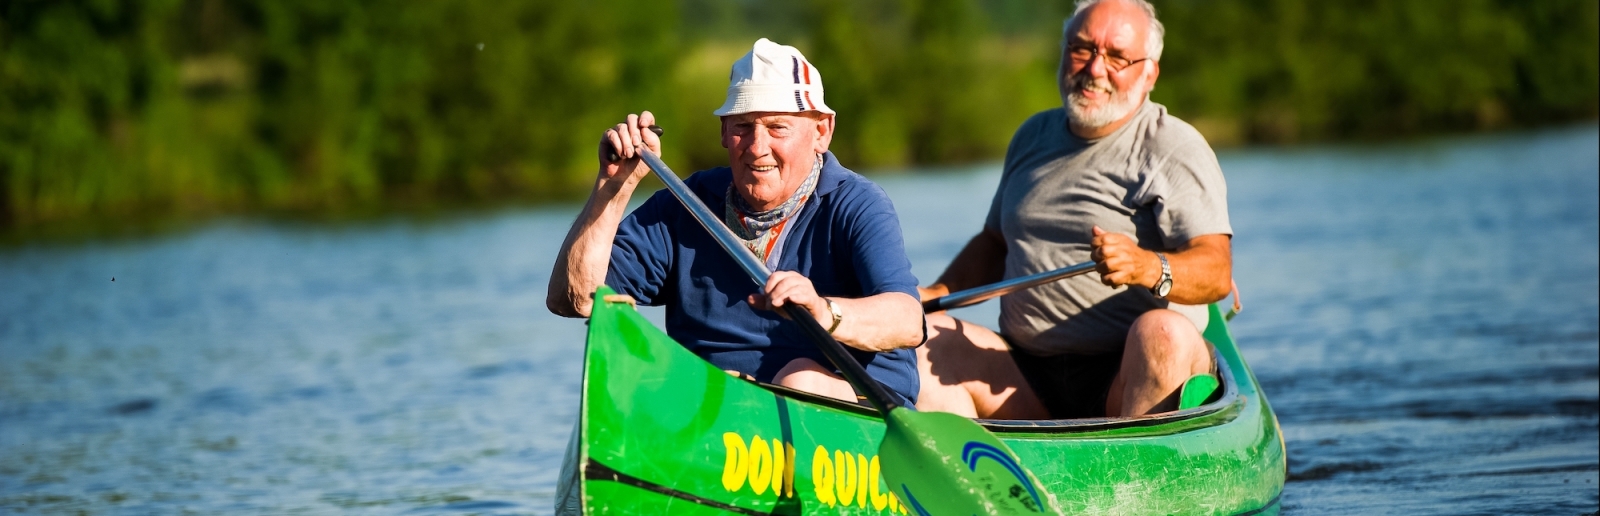 Zwei Senioren paddeln gemeinsa in einem grünen Kanu über ein ruhiges Gewässer.